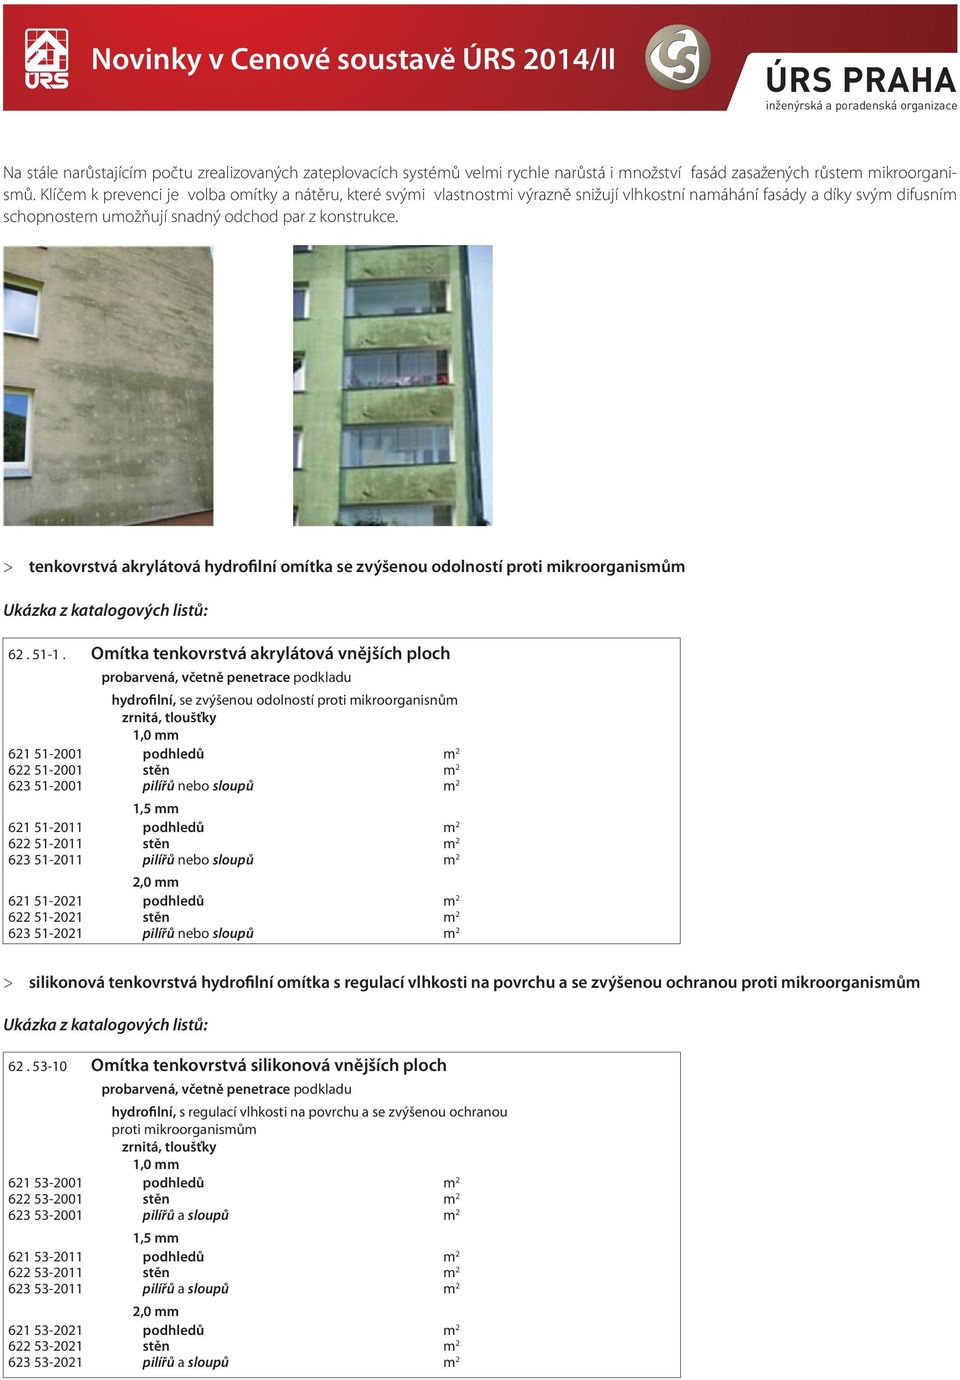 > > enkovrsvá akryláová hydrofilní oíka se zvýšenou odolnosí proi ikroorganisů KL 801-1 Čás A04 Ukázka položka z kaalogových popis lisů:.j. 6. 51 1.